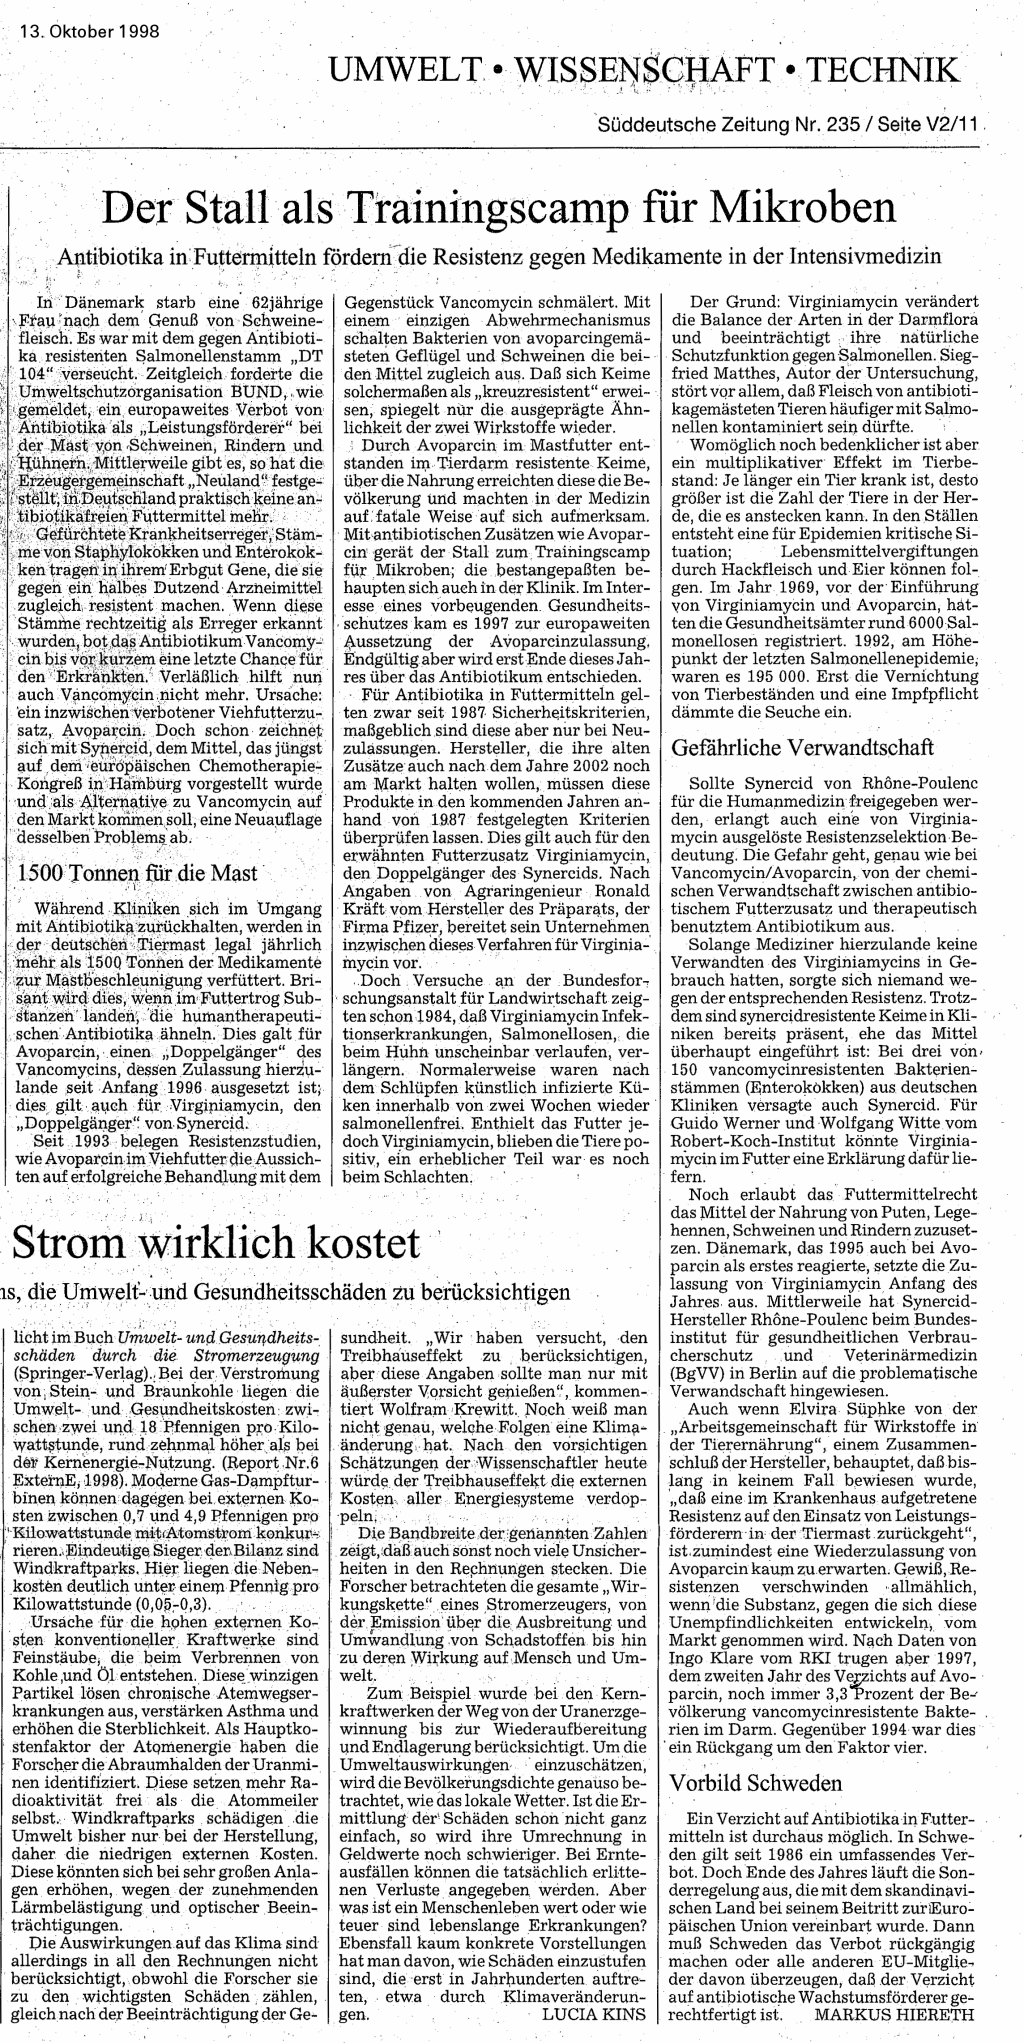 Der Stall als Trainingscamp für
       Mikroben, Süddeutsche Zeitung  vom 13.10.1998